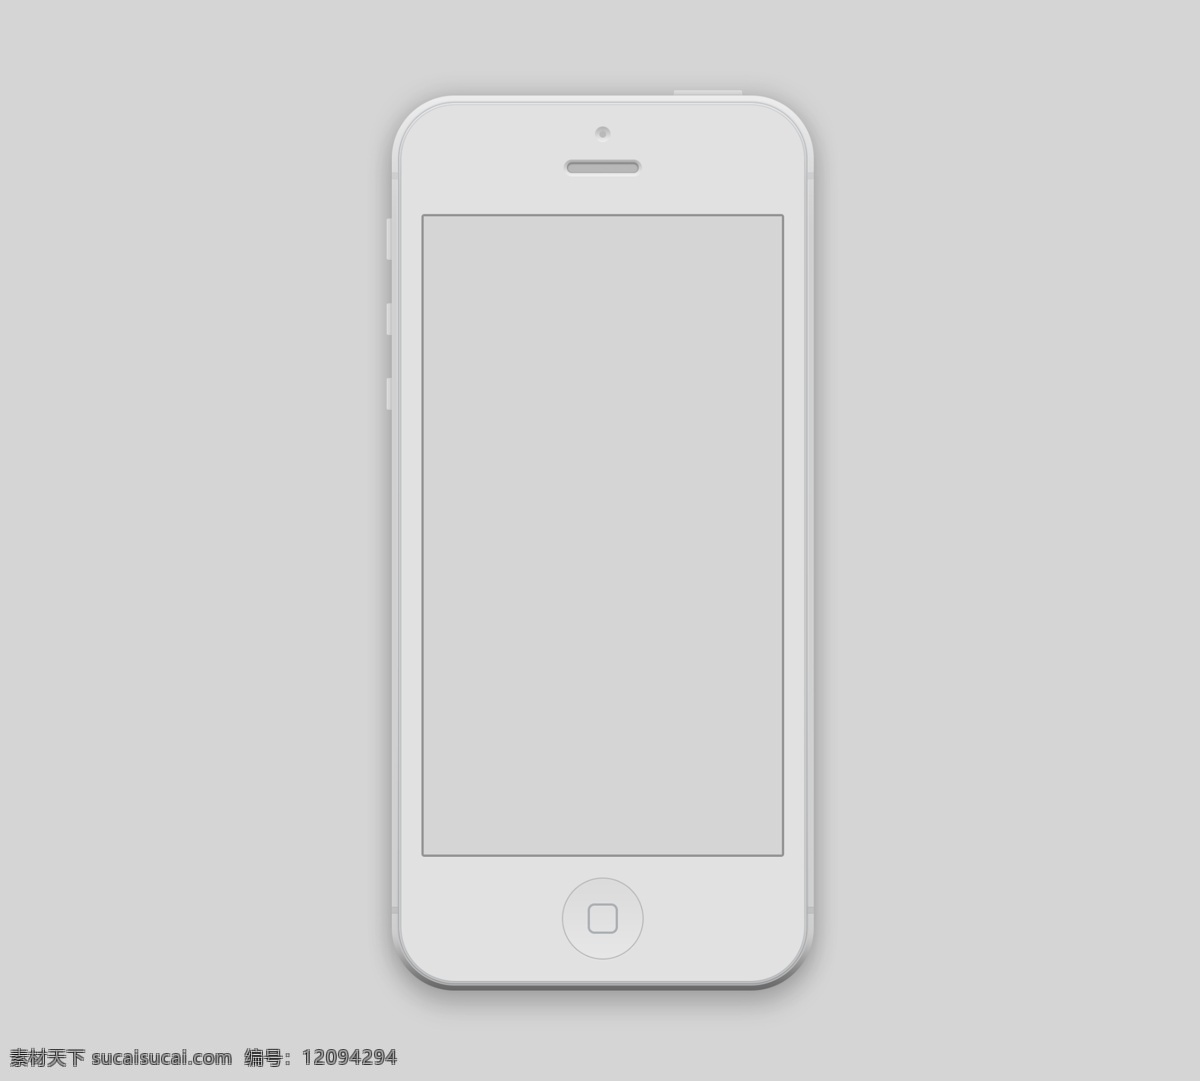 模型 模板 详细 白色 iphone web 创意 高分辨率 接口 免费 时尚的 现代的 独特的 原始的 质量 新鲜的 设计新的 清洁 hd 元素 用户界面 ui元素 详细的 5模型 白色的 移动 杂项 矢量图